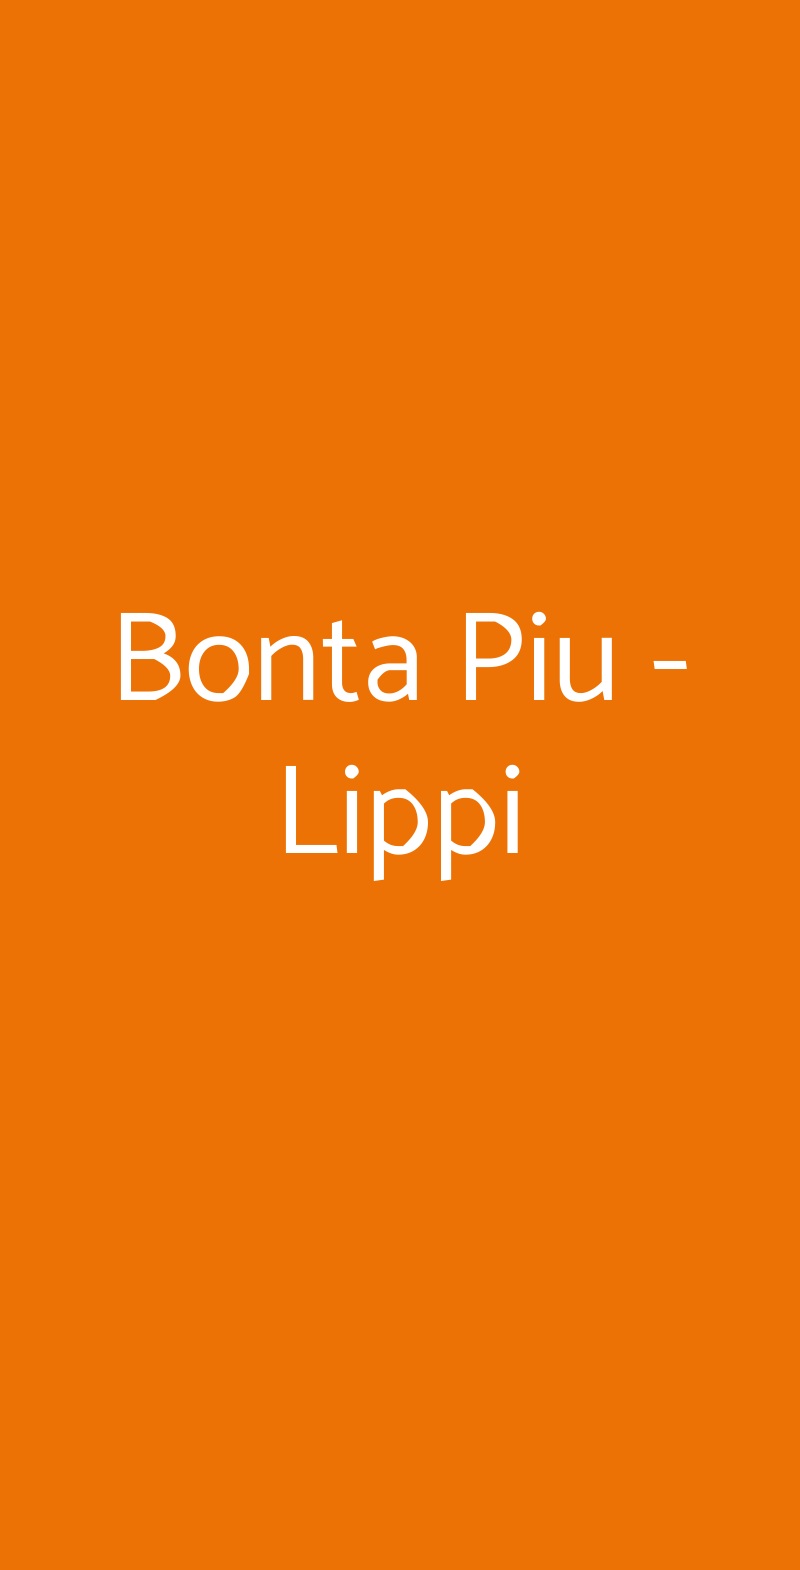 Bonta Piu - Lippi Milano menù 1 pagina